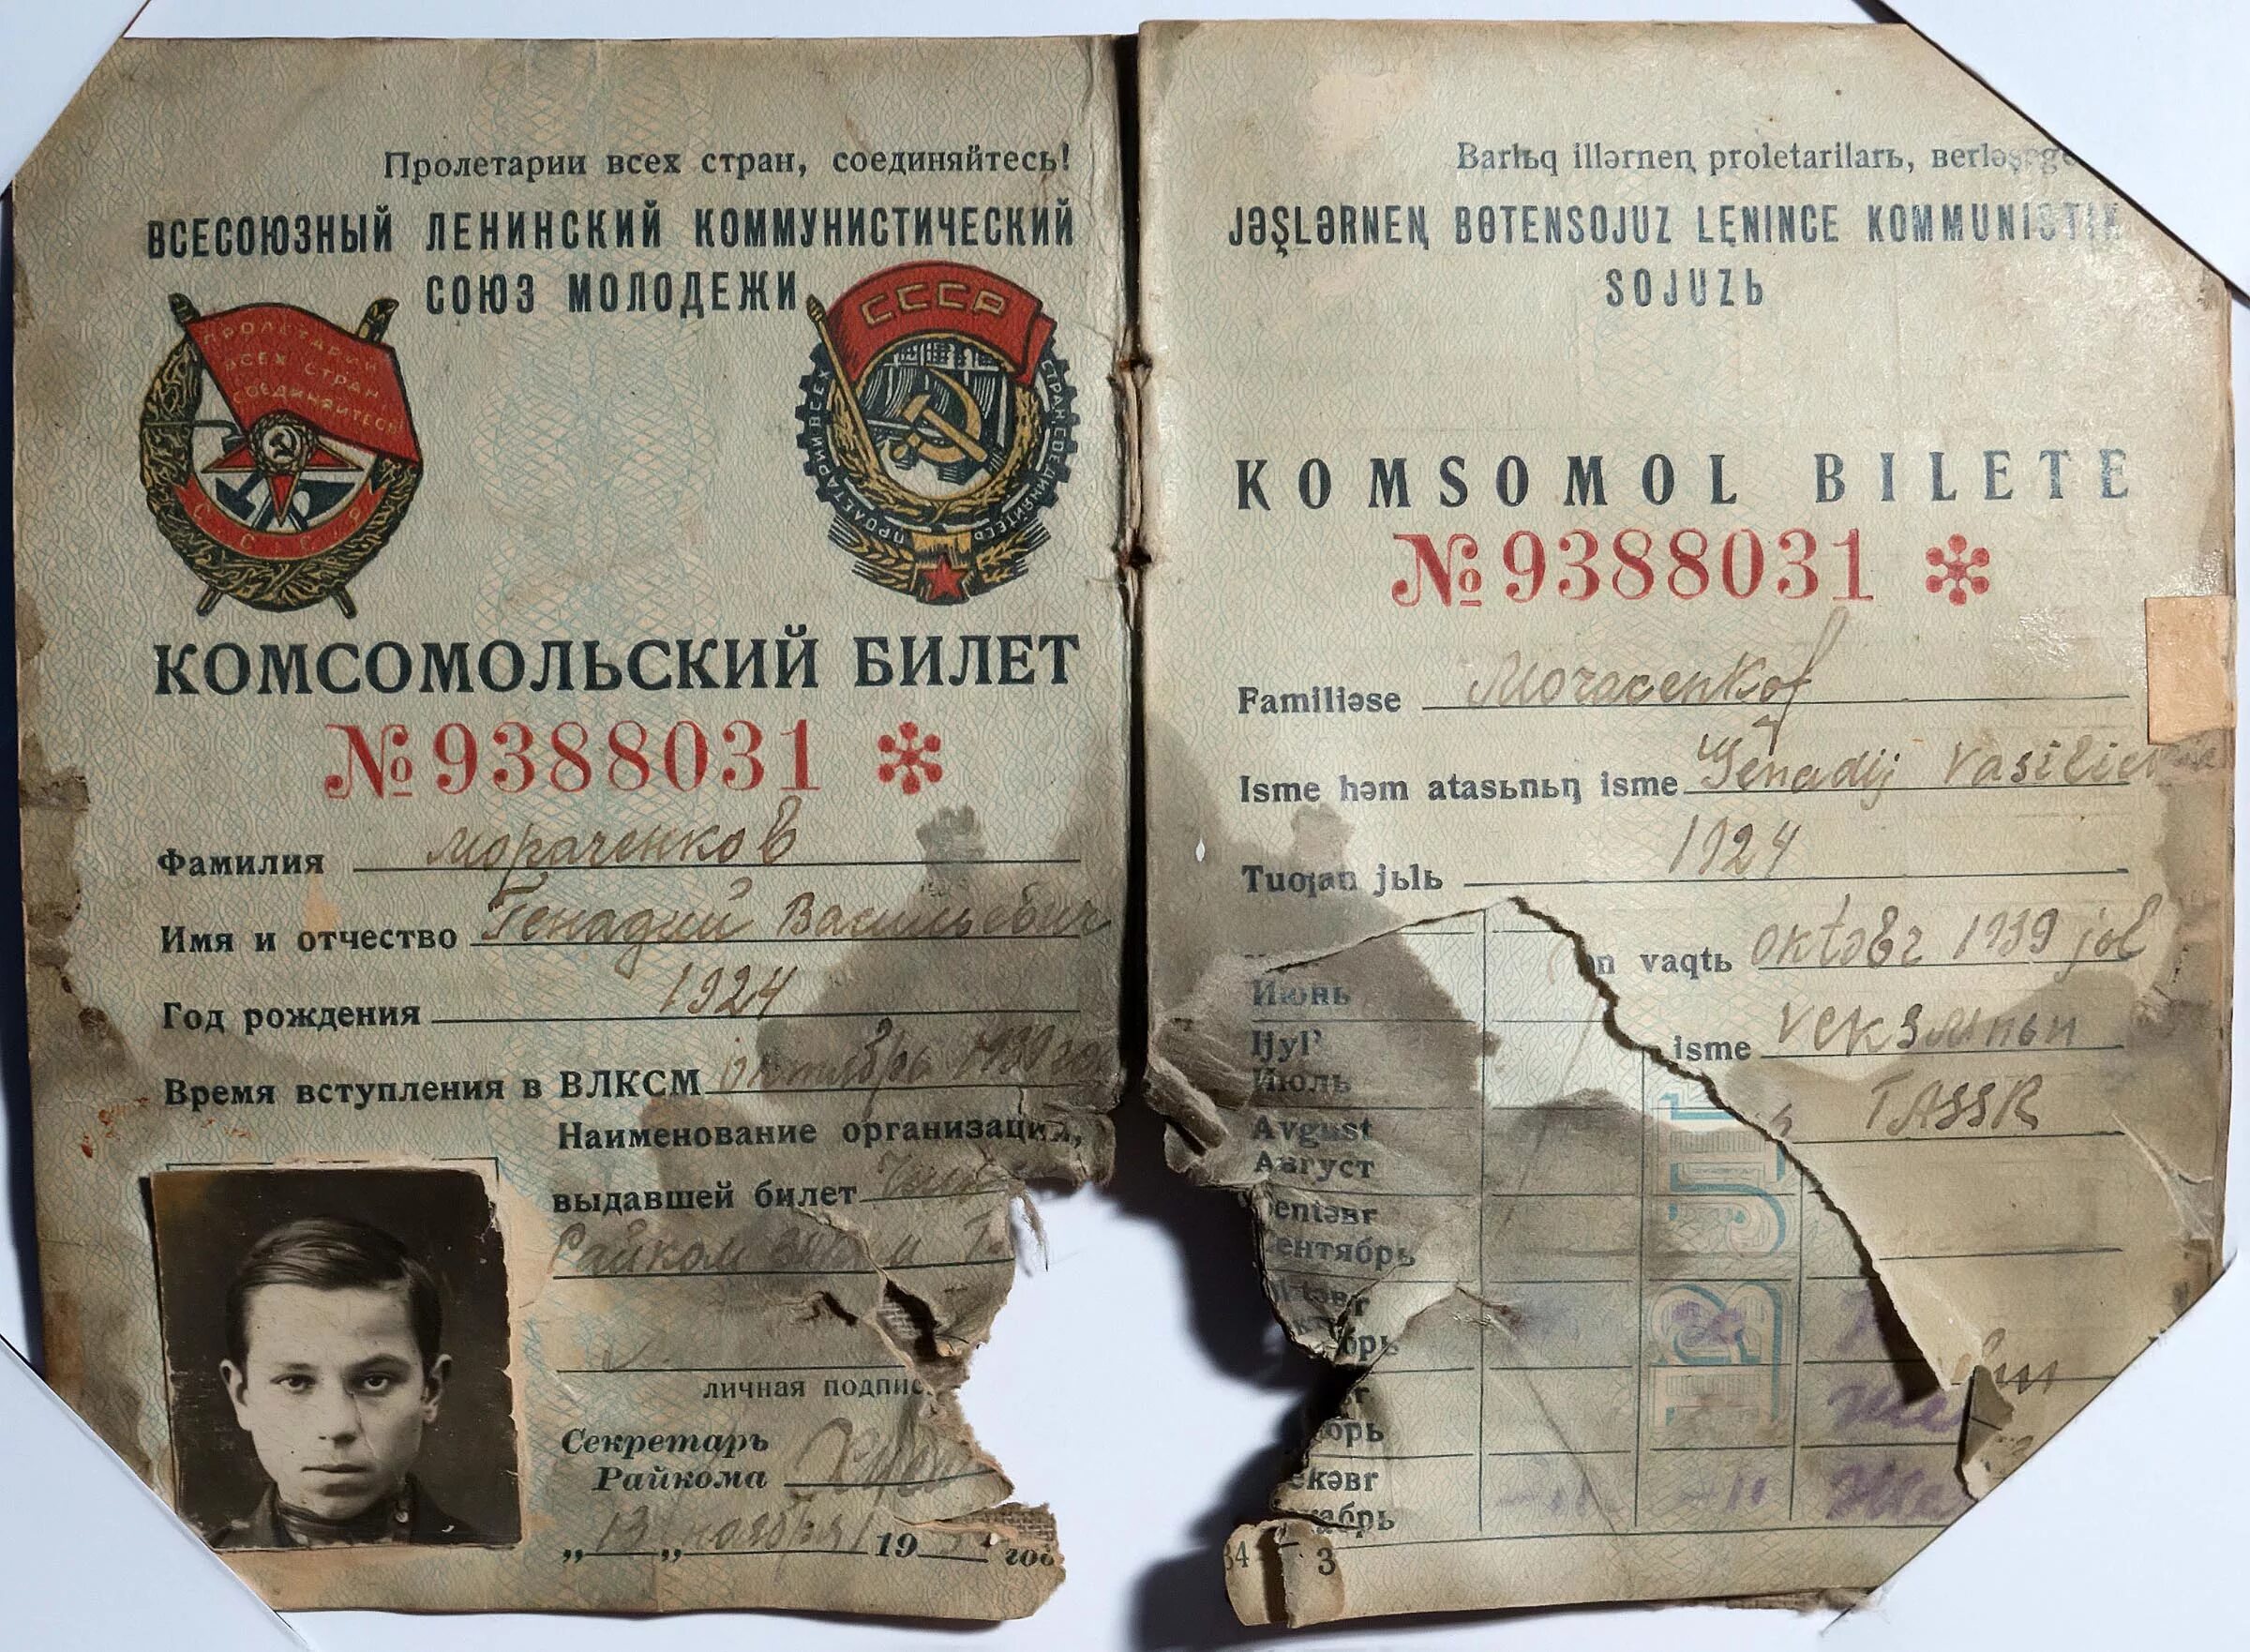 Название бывшей ссср. Комсомольский билет. Комсомольский билет пробитый пулей. Пробитый Комсомольский билет. Комсомольский билет ВЛКСМ.